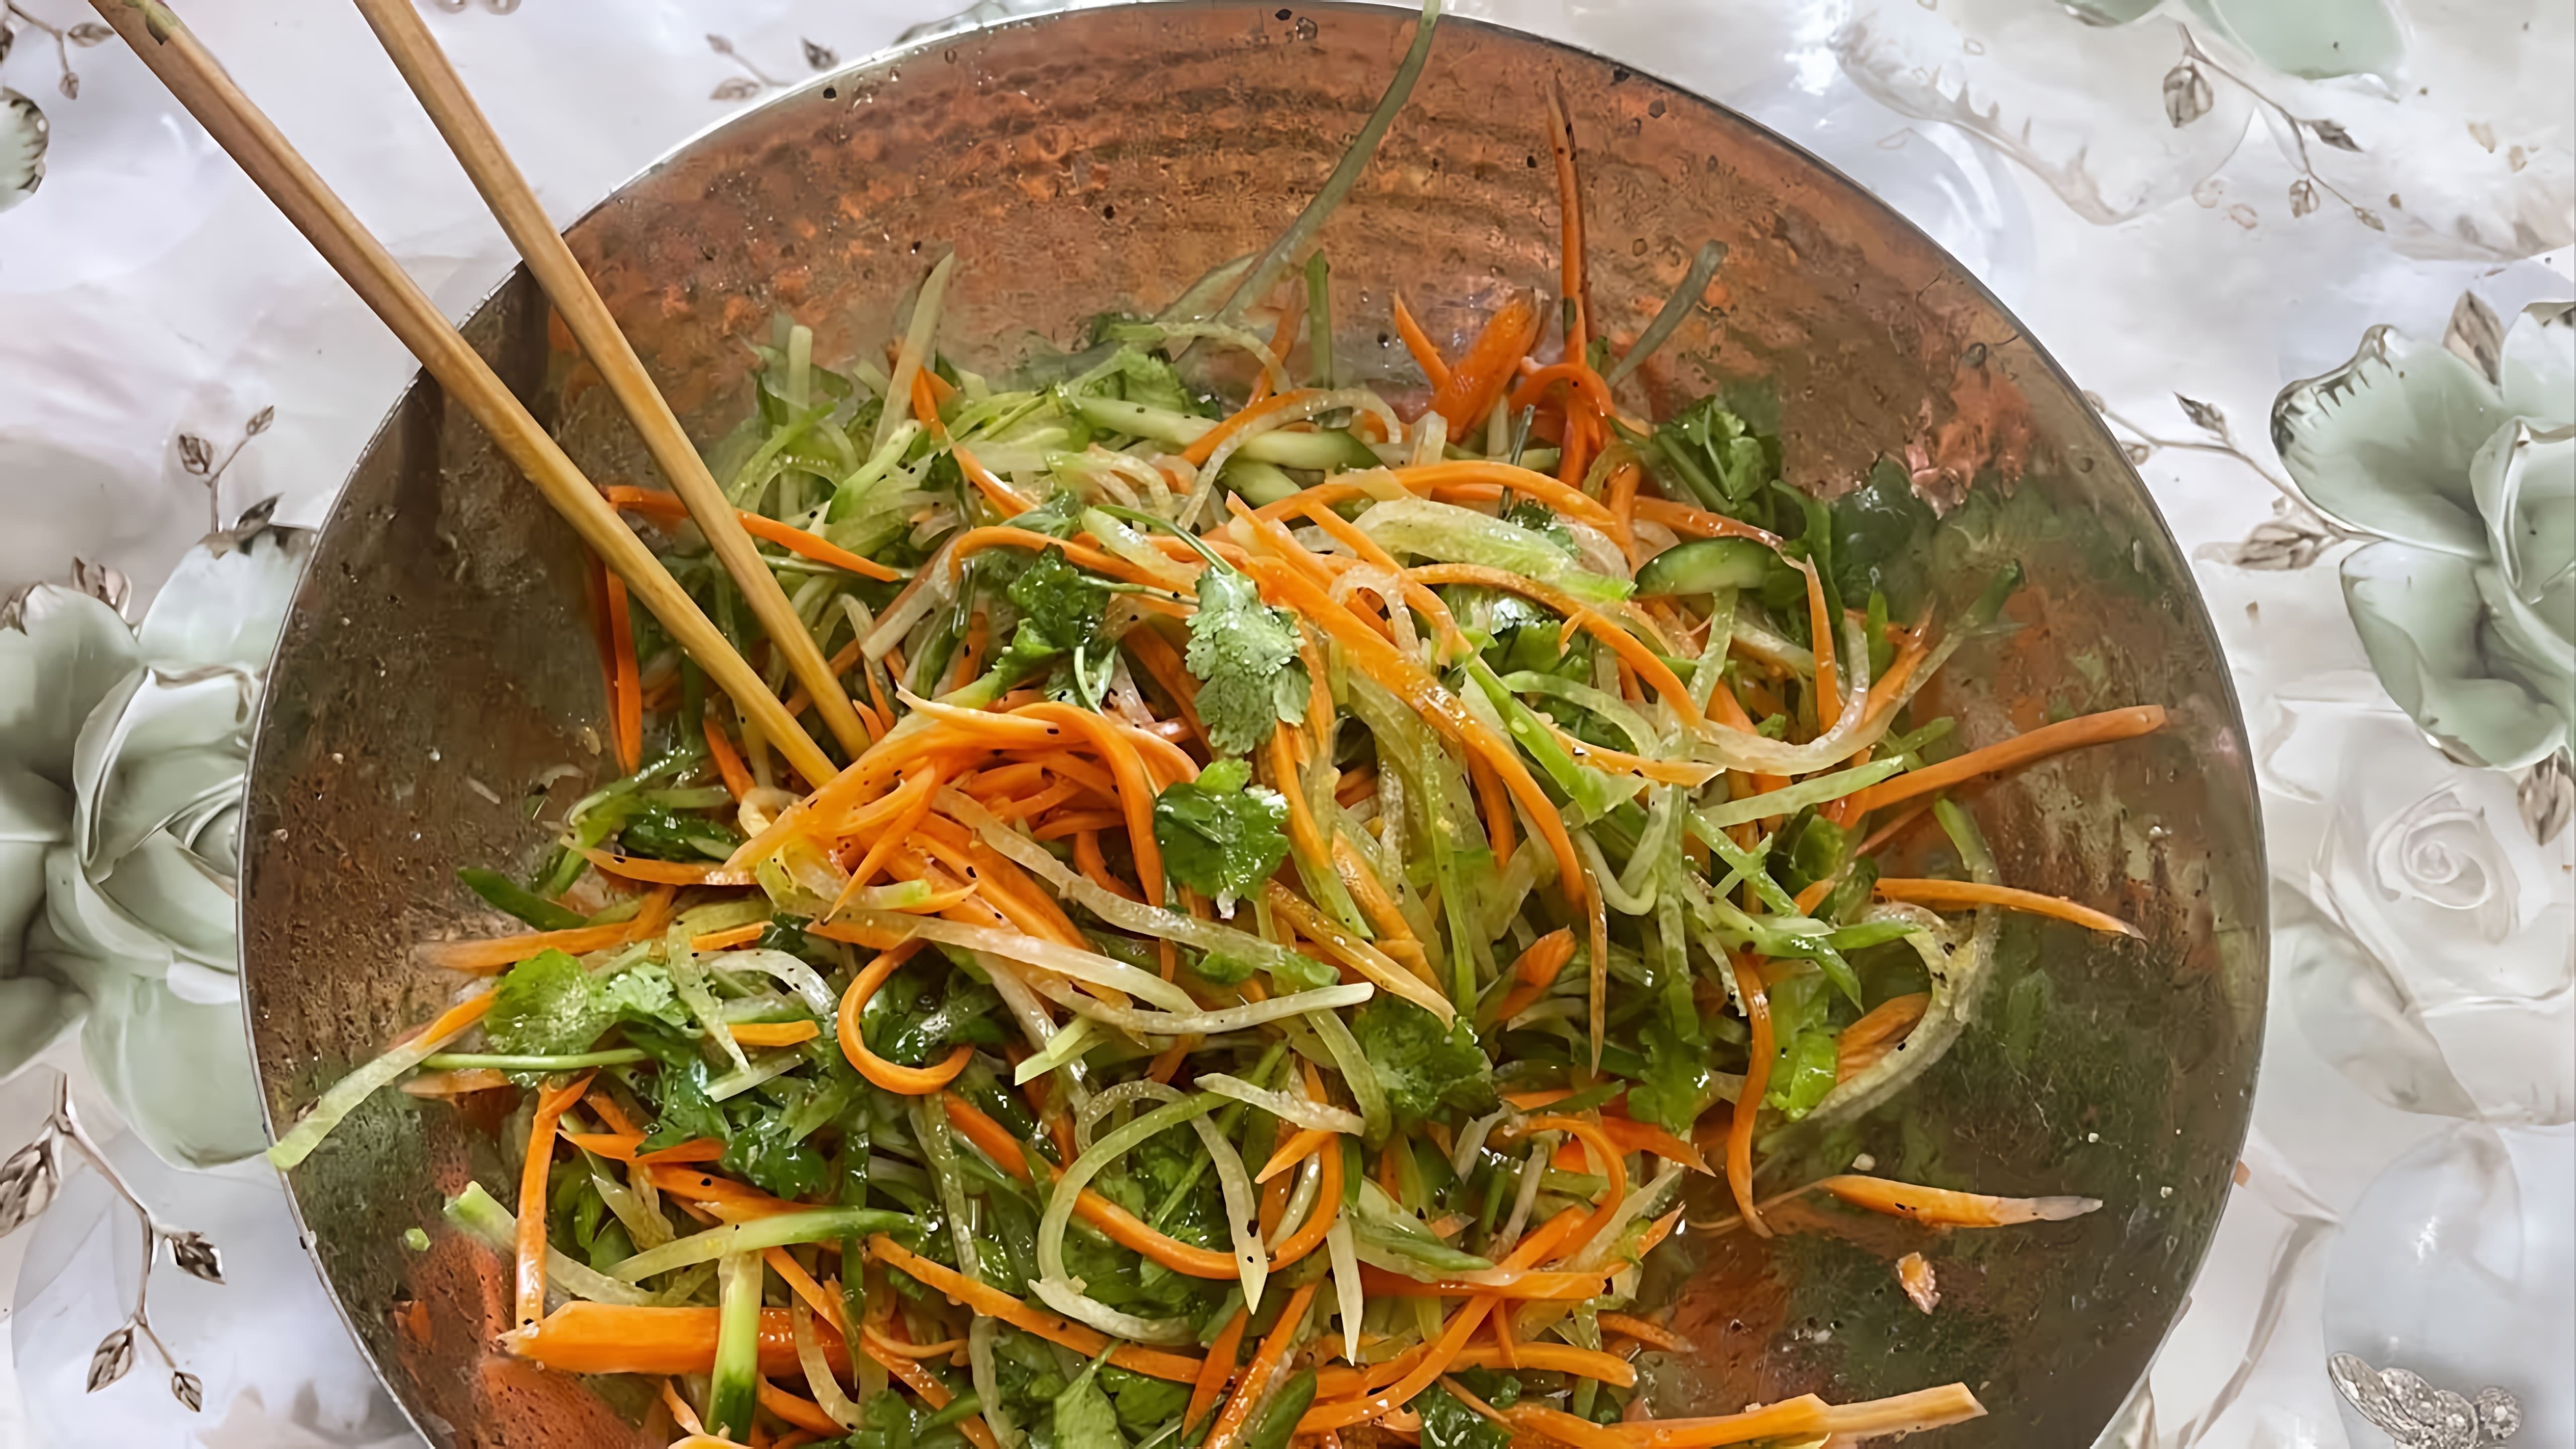 В этом видео демонстрируется процесс приготовления салата из зеленой редьки, моркови и огурца